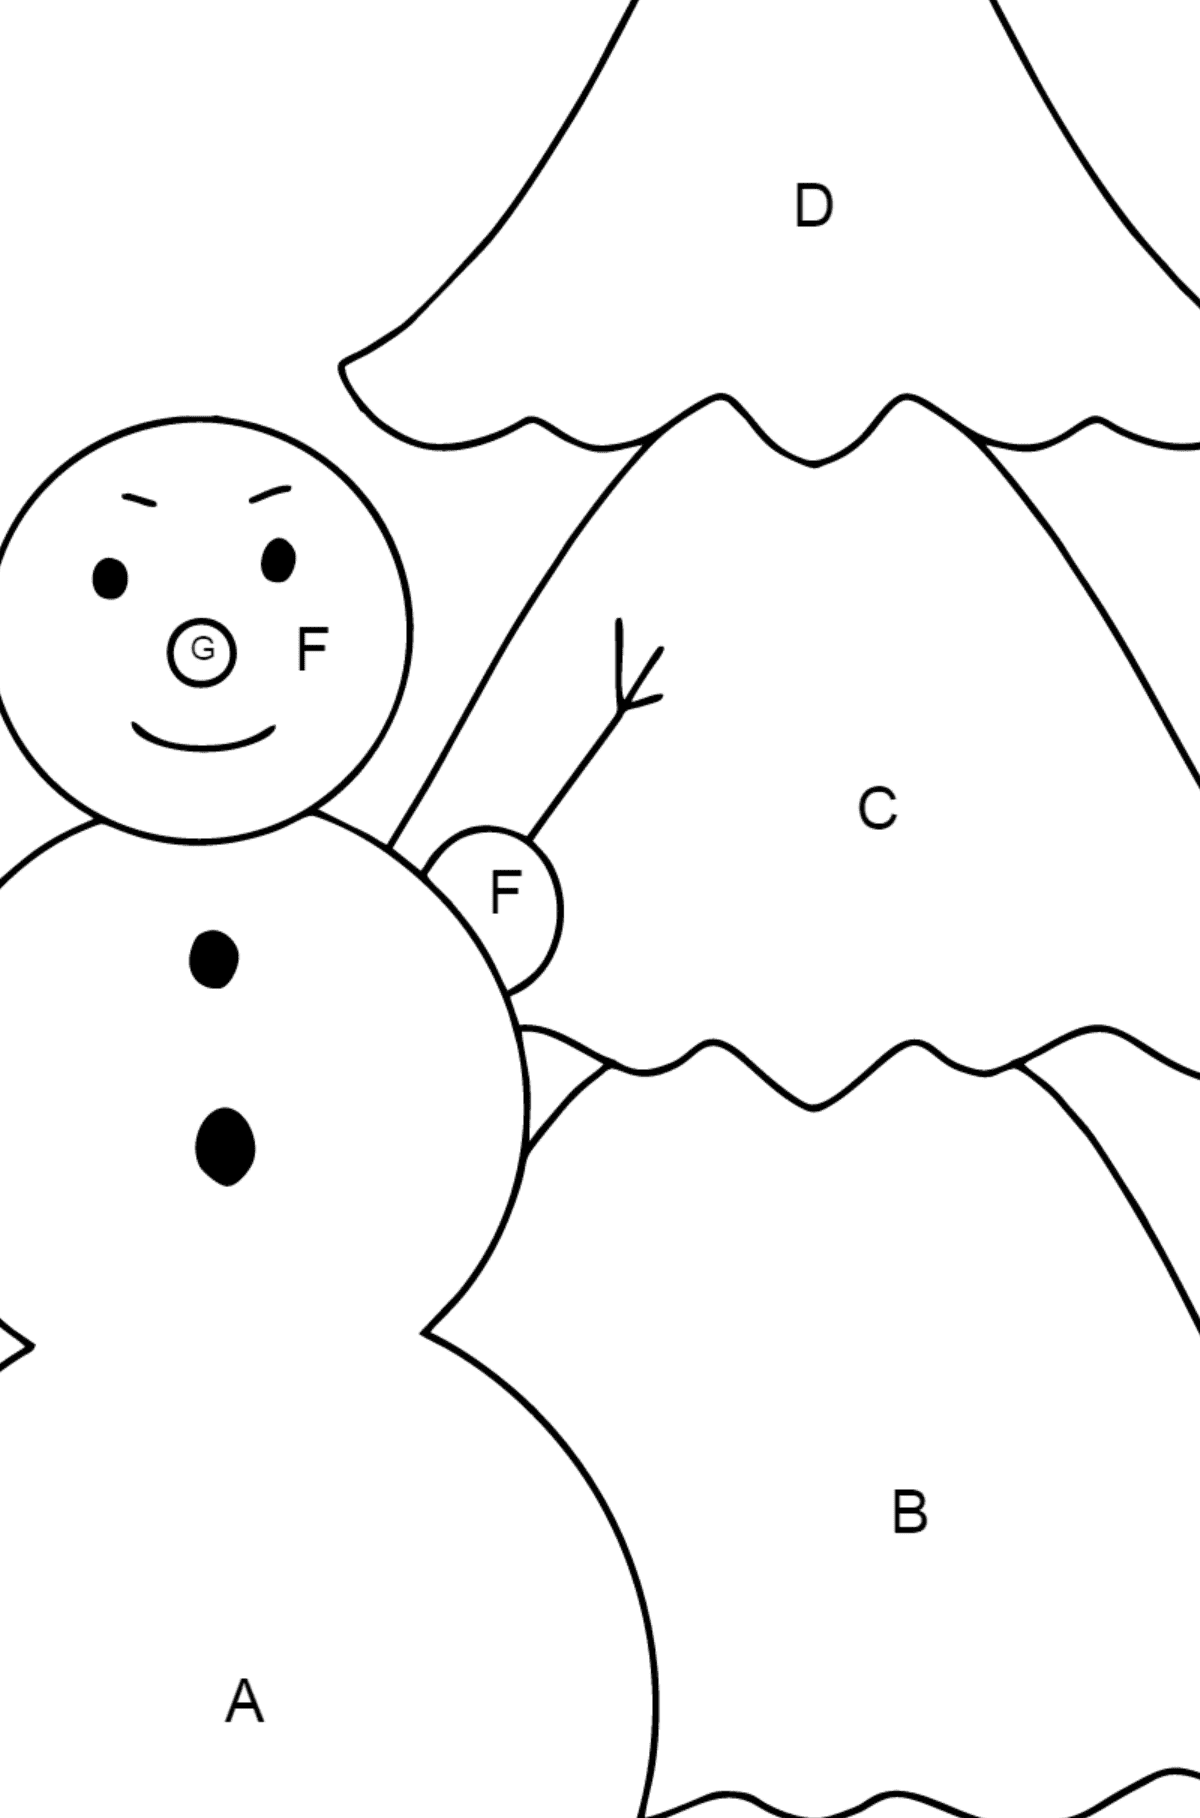 Ausmalbild: Schneemann und Weihnachtsbaum - Ausmalen nach Buchstaben für Kinder